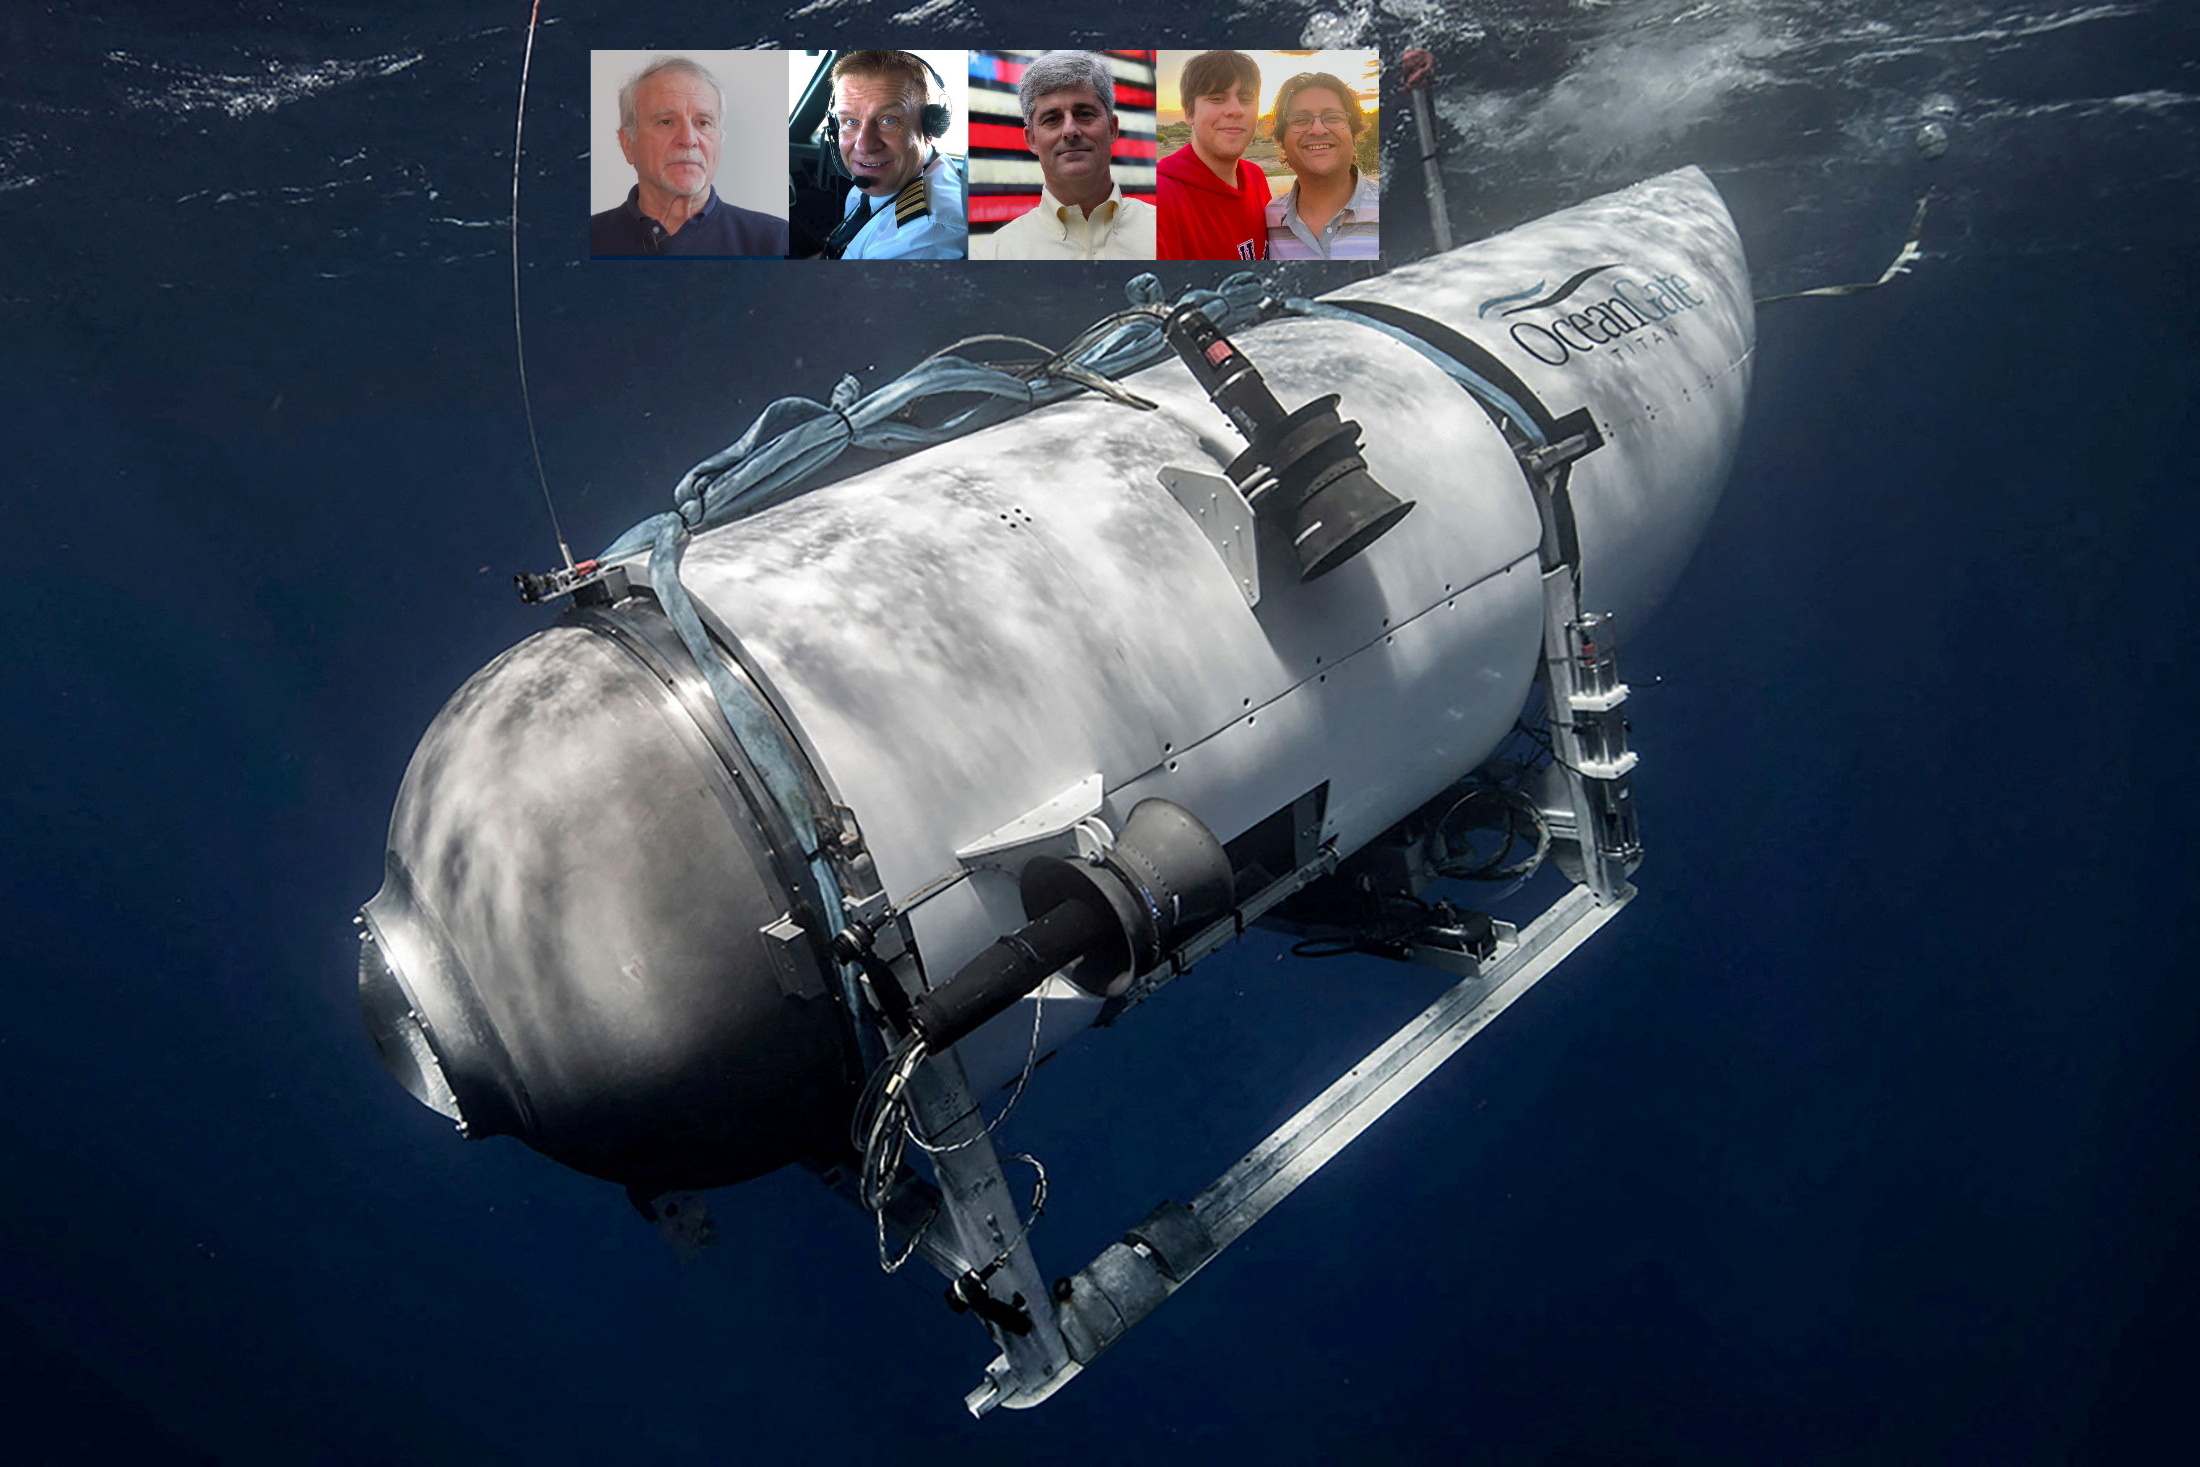 Τιτανικός: Βρέθηκαν συντρίμμια από το υποβρύχιο Titan – Οι επίσημες ανακοινώσεις